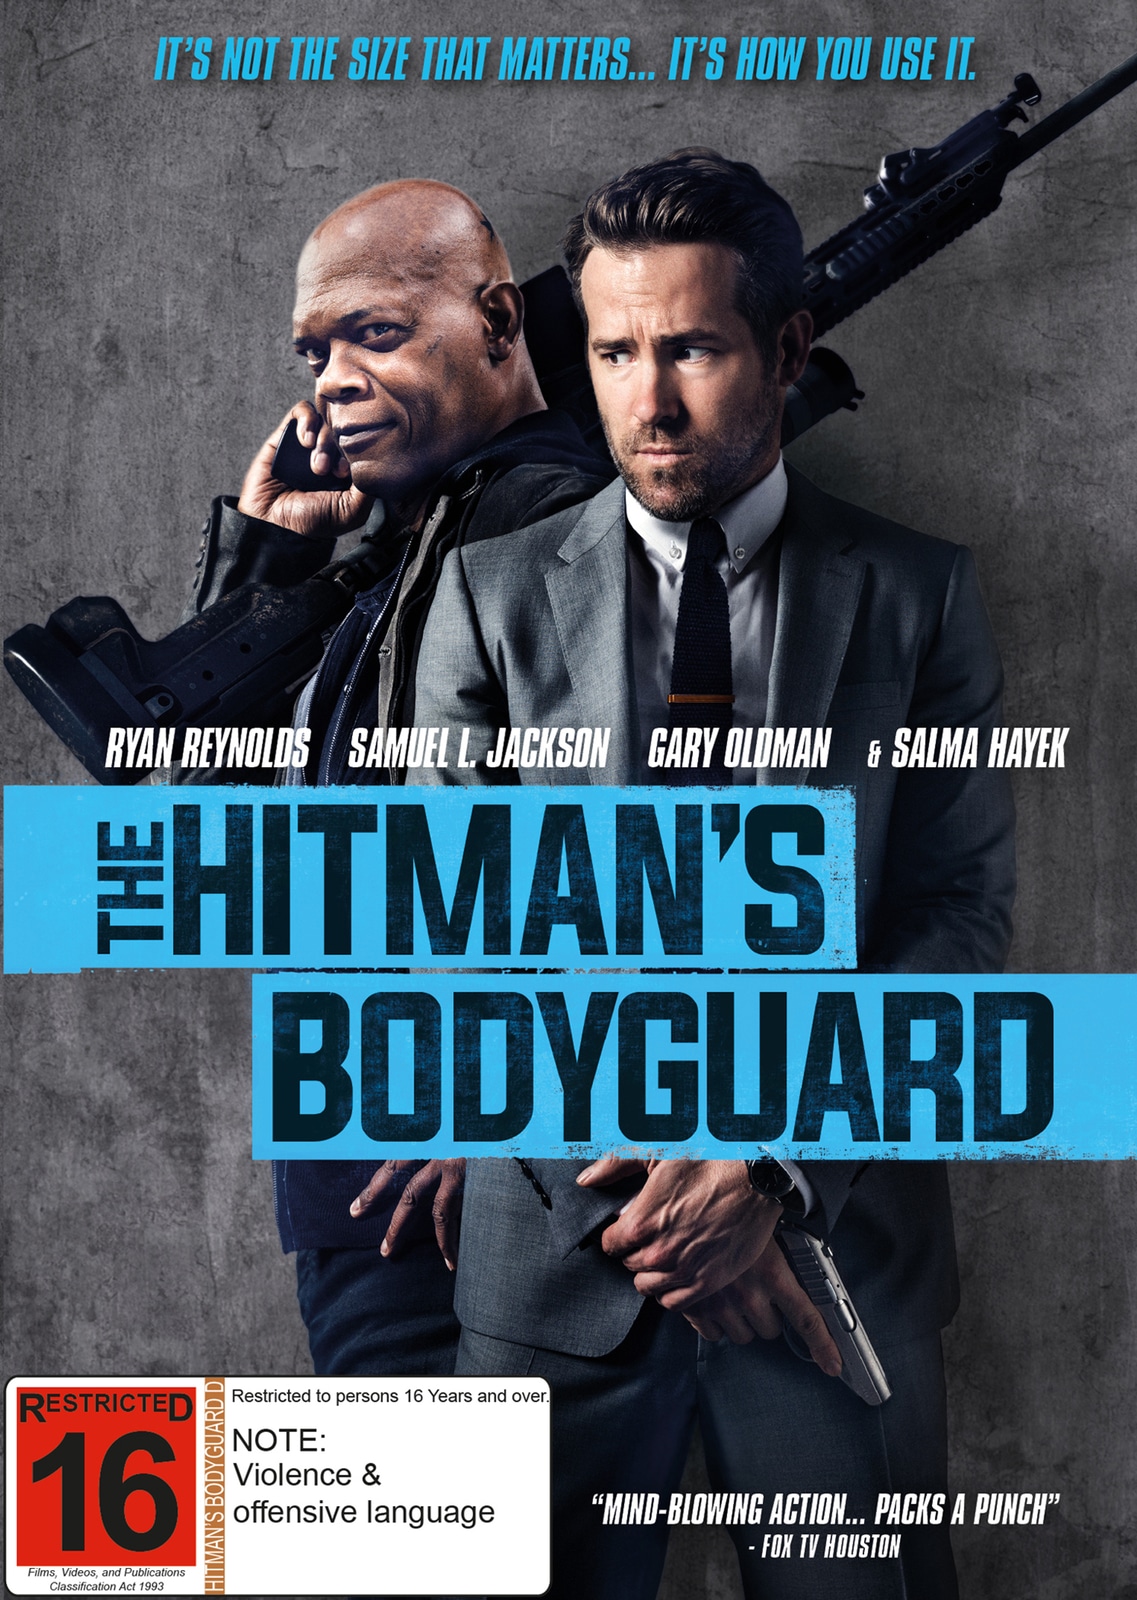 HitmanS Bodyguard